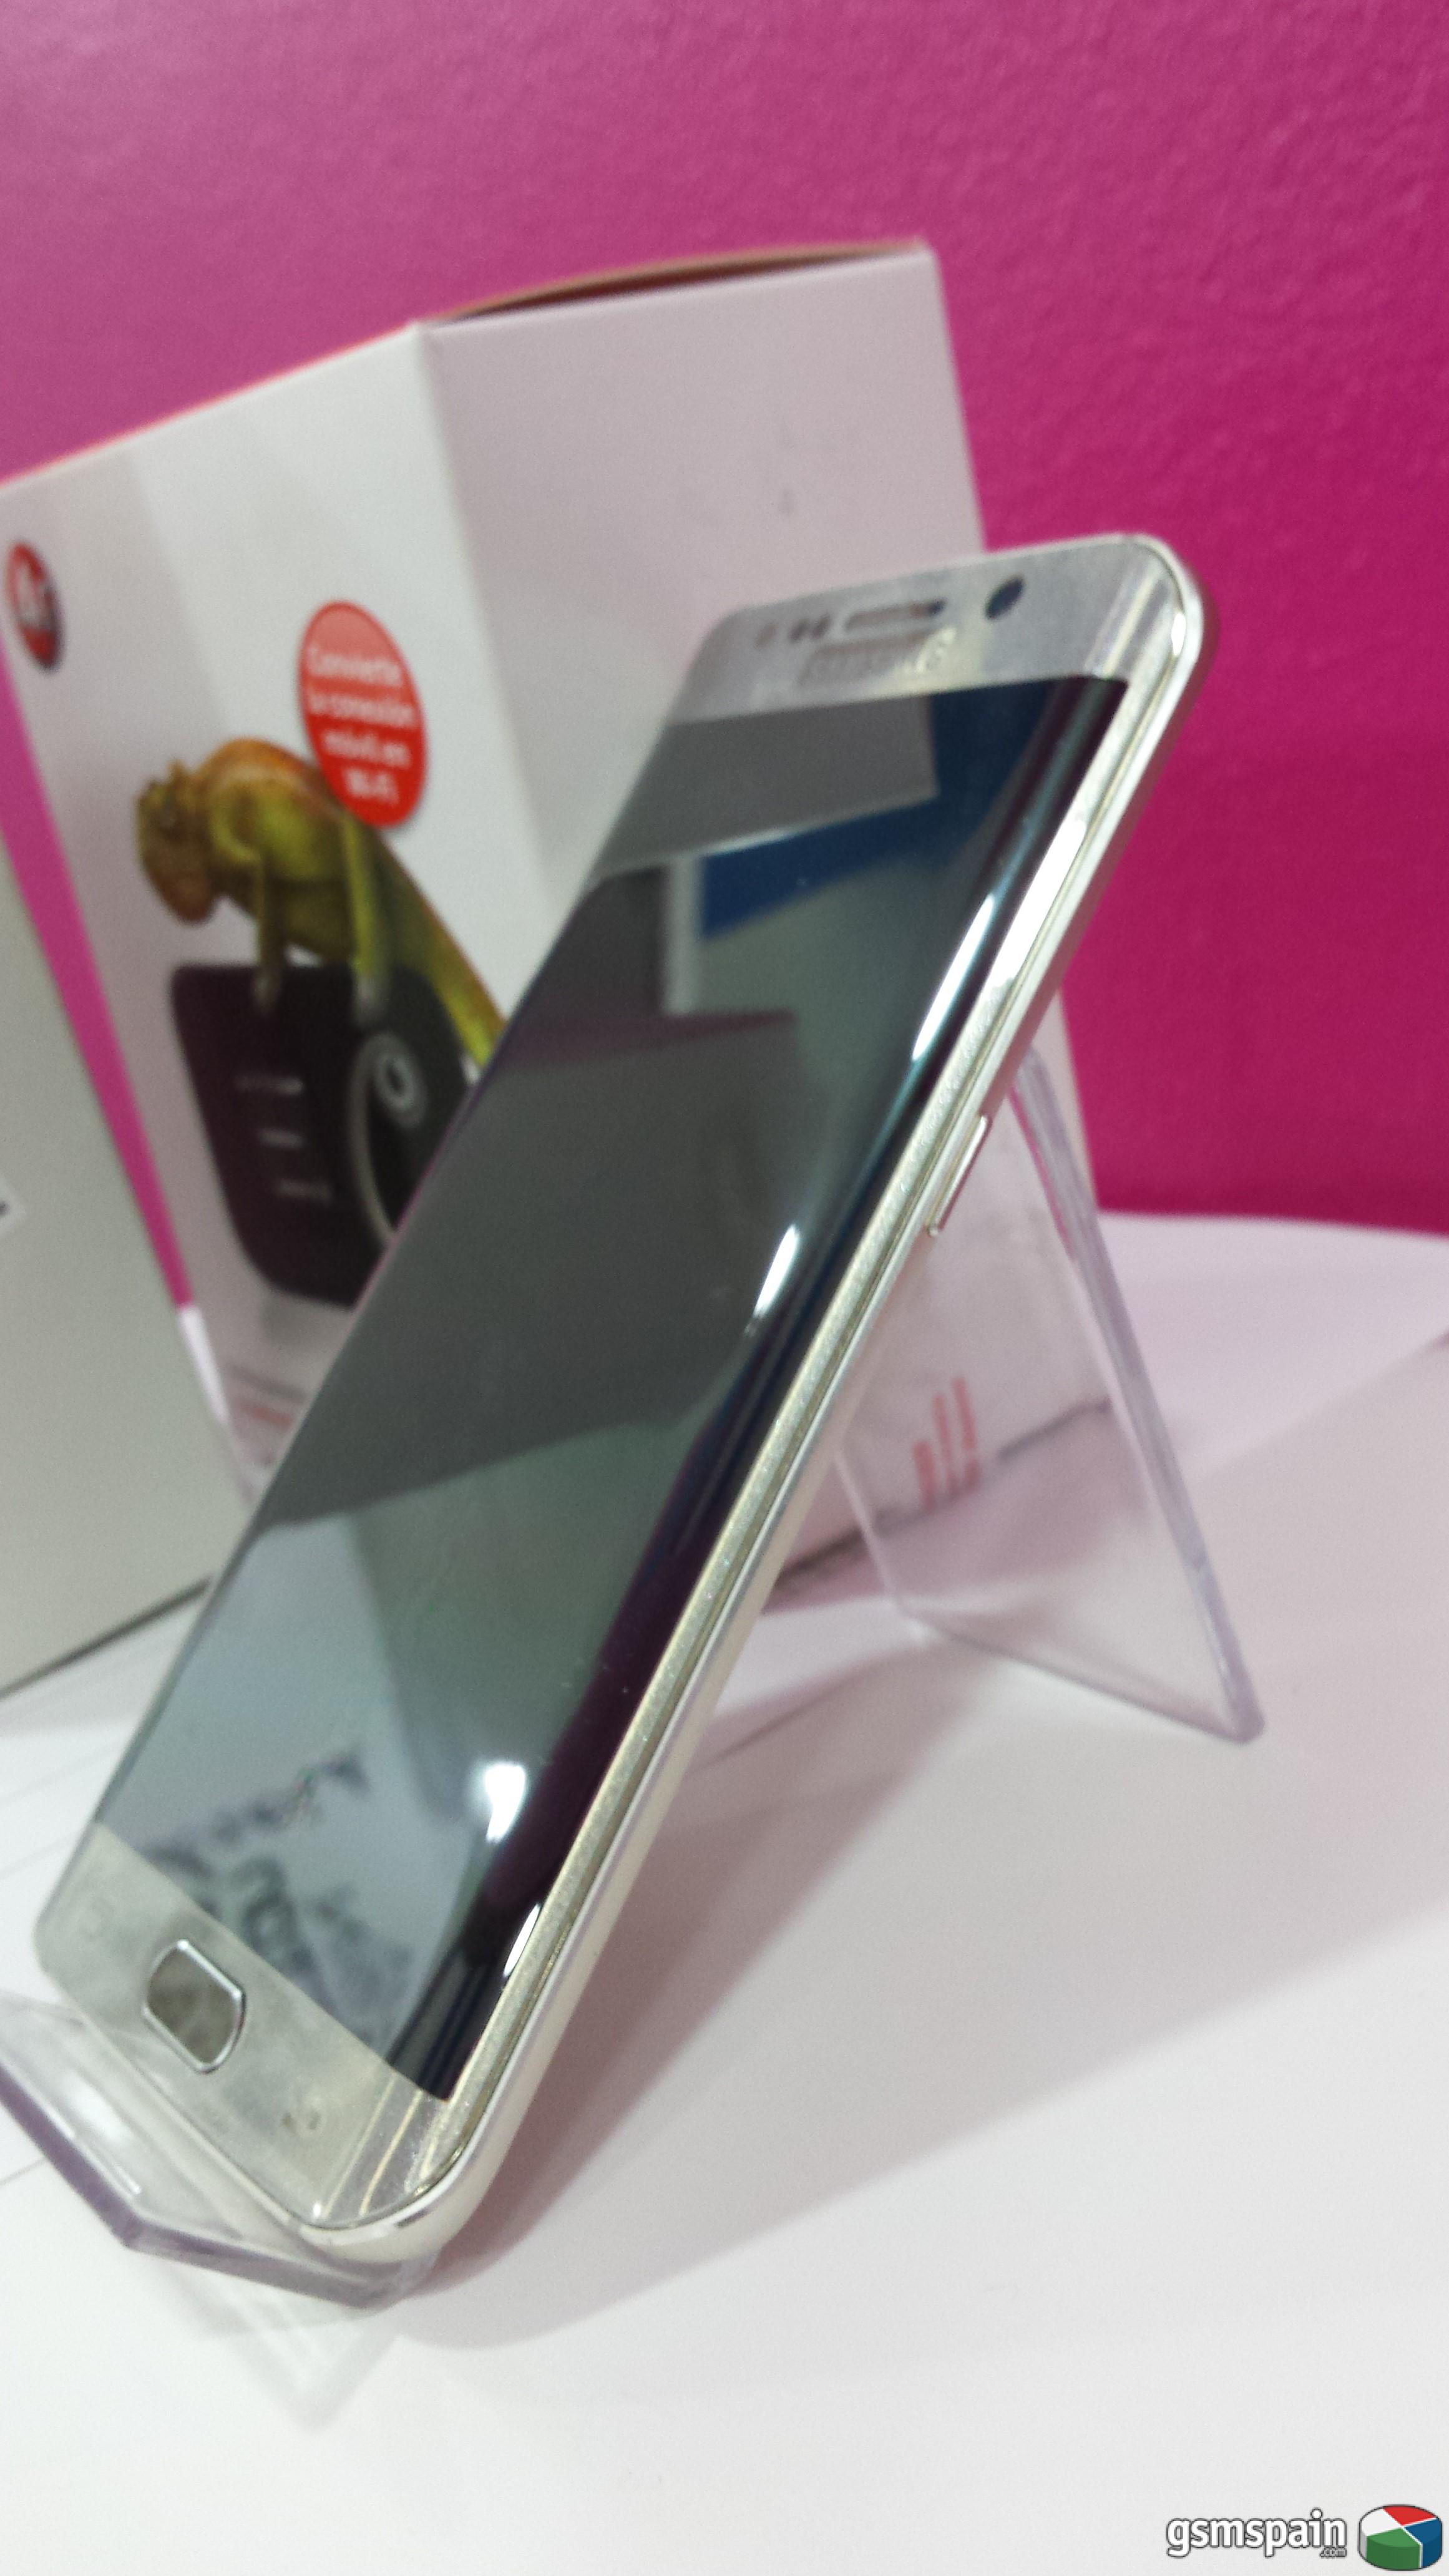 [vendo] Samsung Galaxy S6 Edge Gold  Libre 32gb, Router Wifi De Regalo